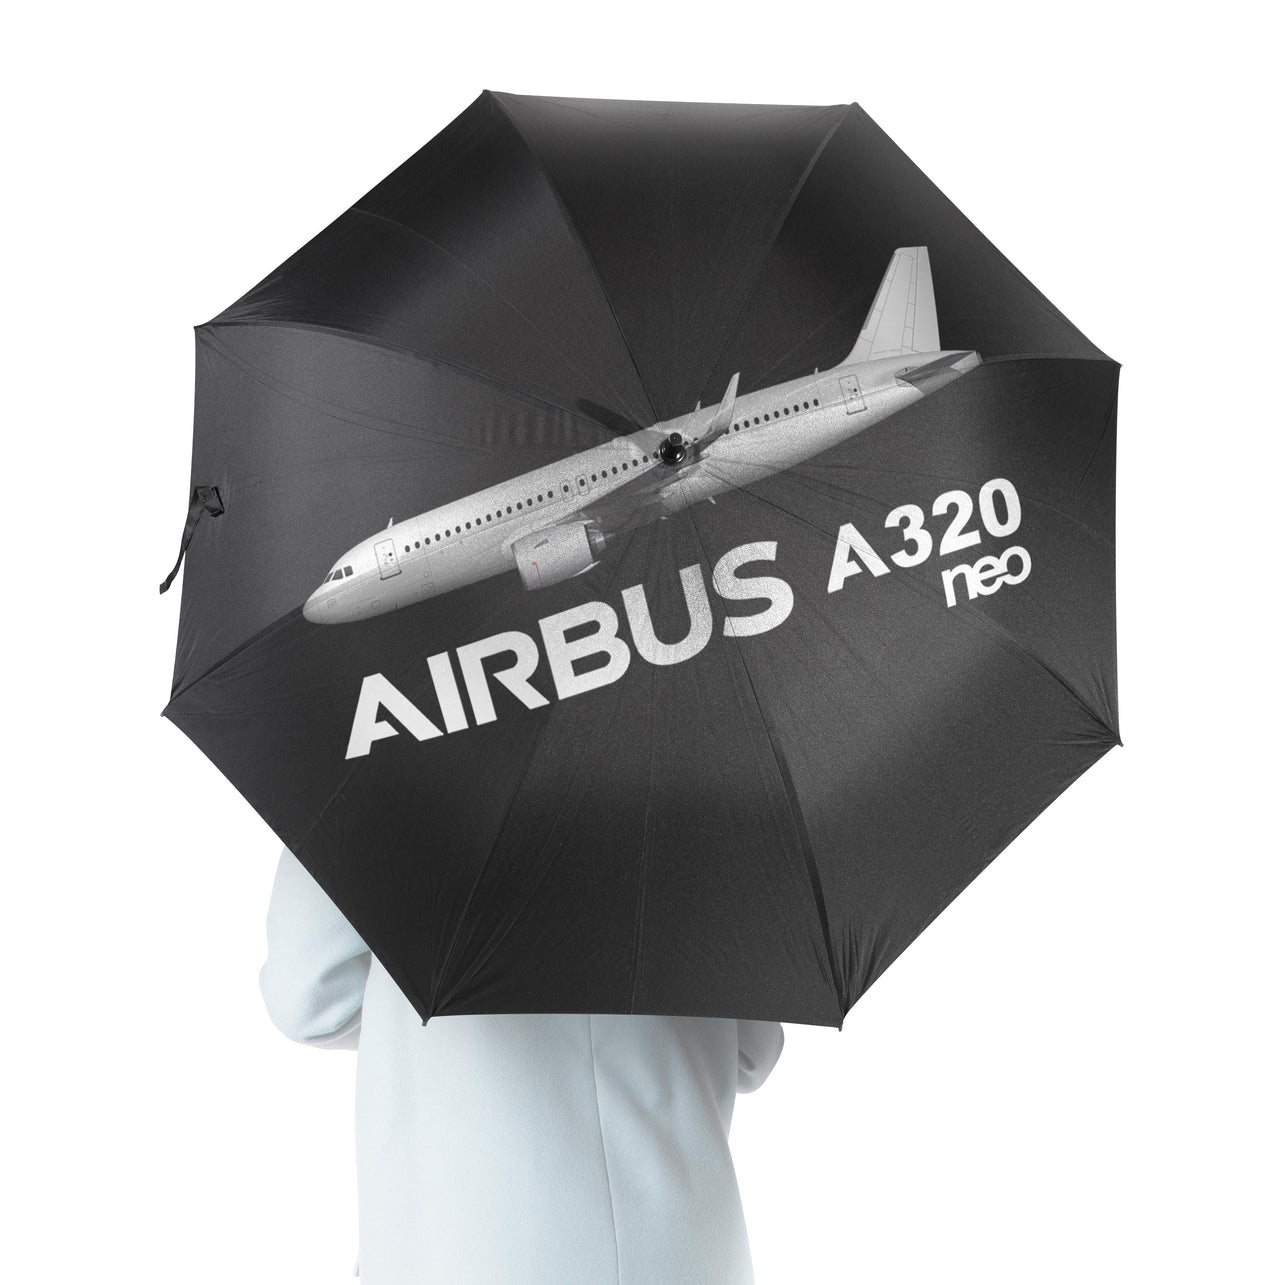 The Airbus A320Neo Designed Umbrella